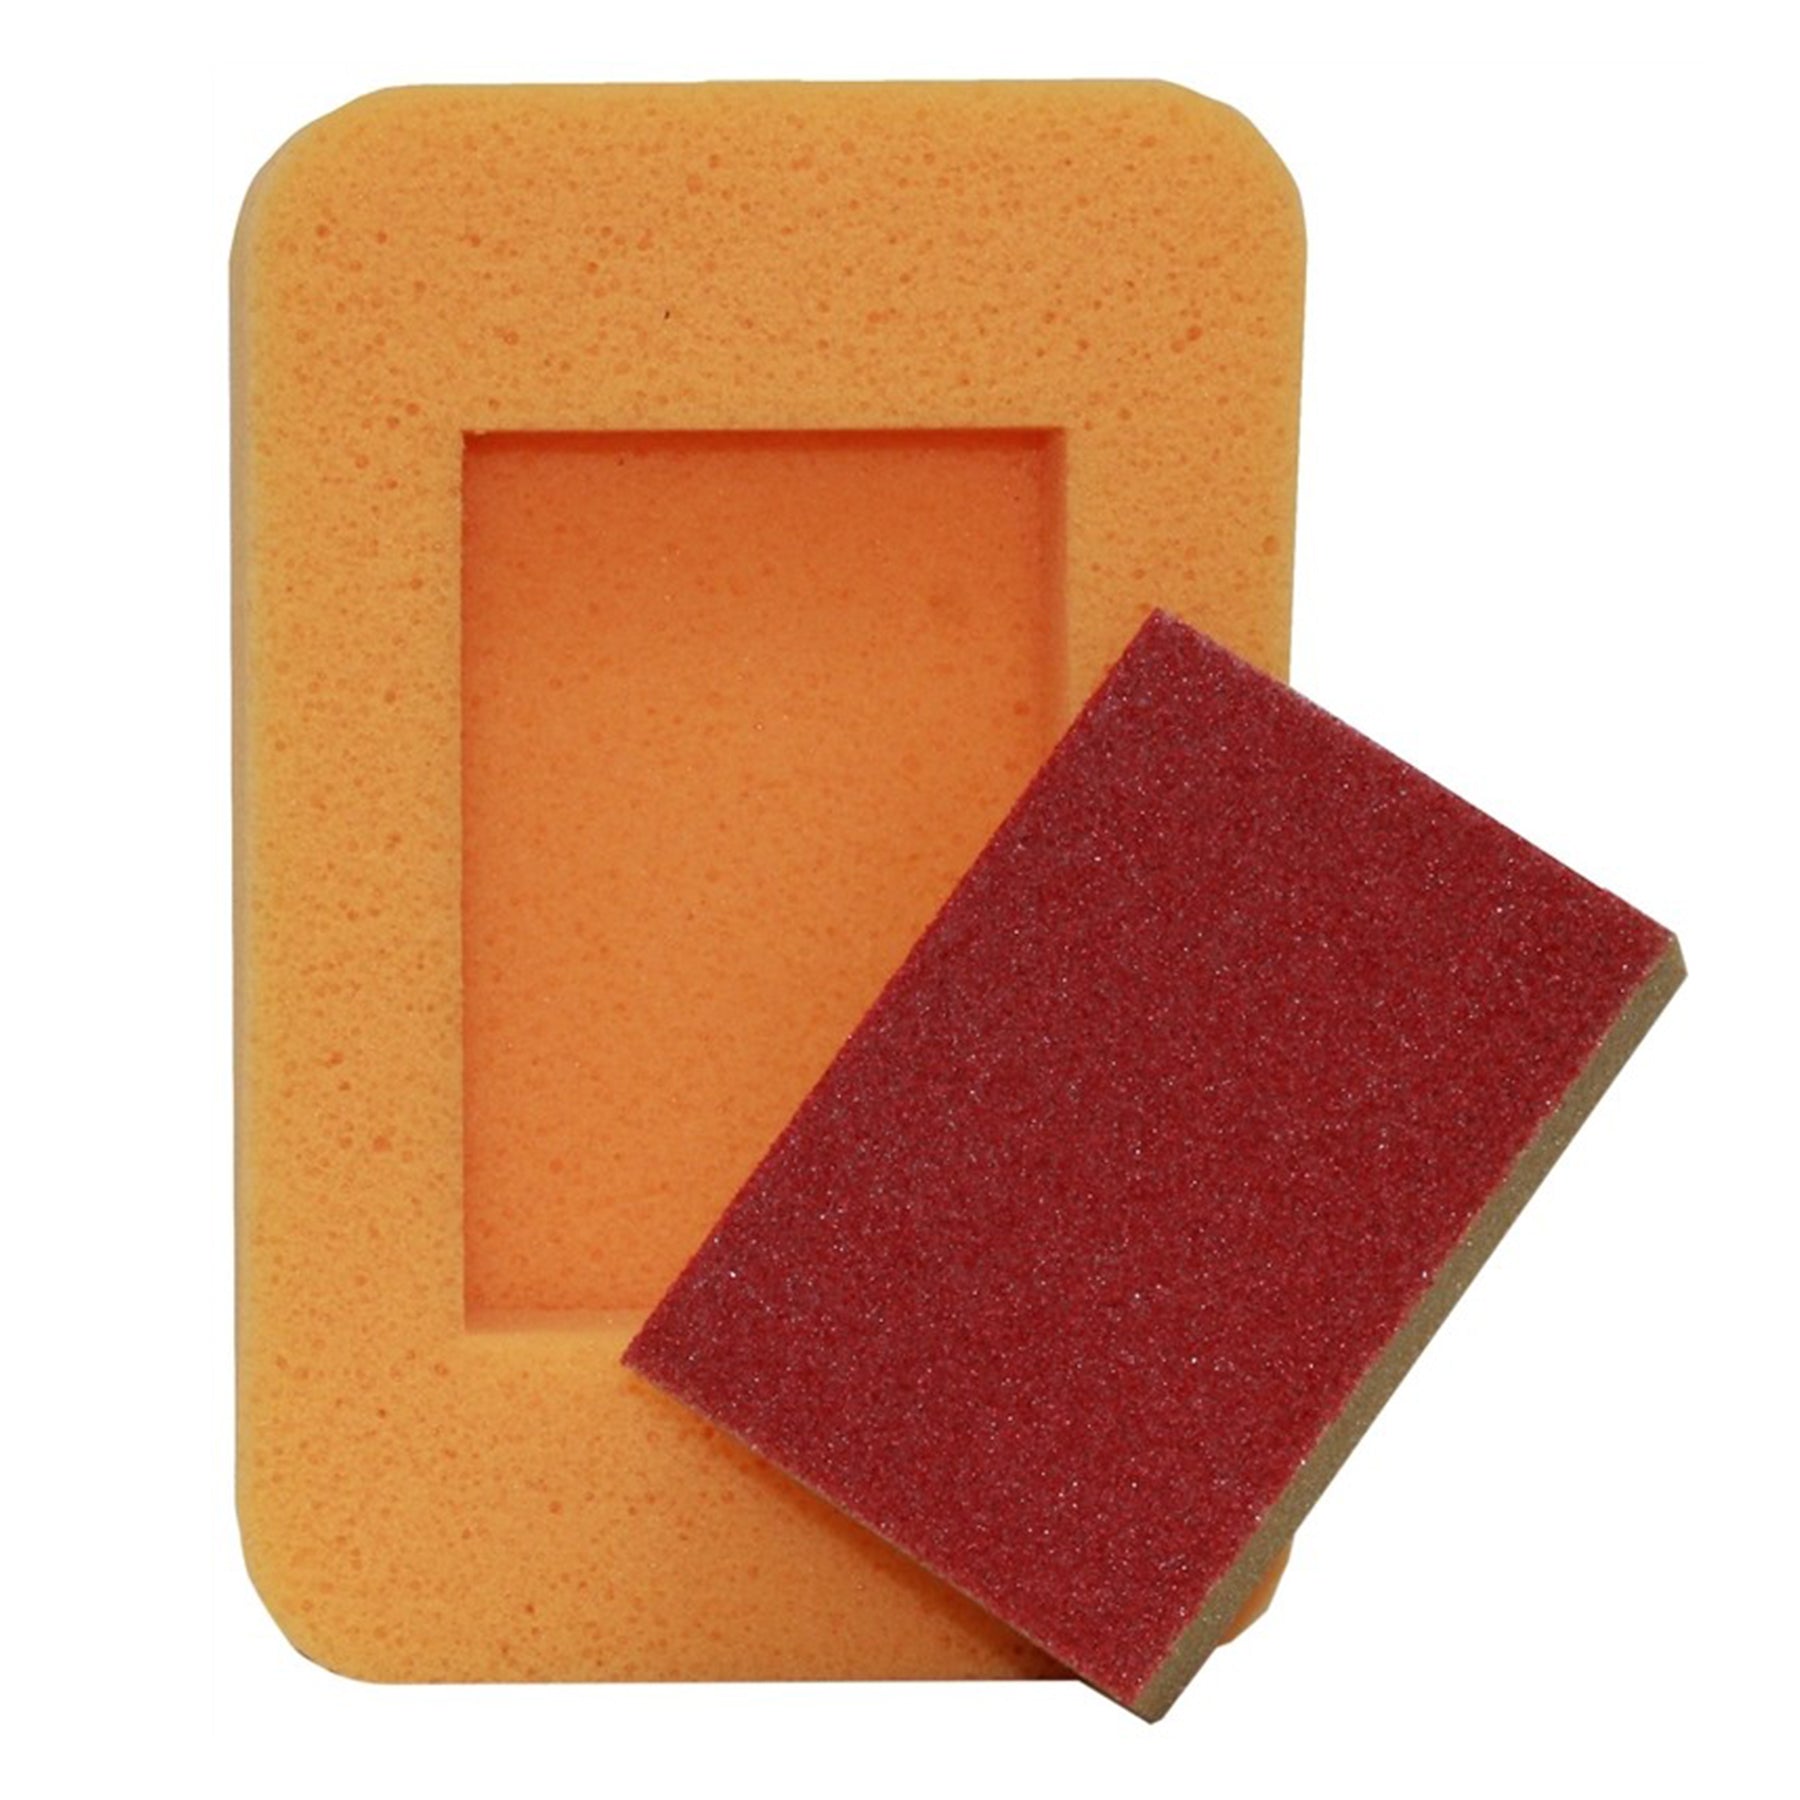 Sanding Sponge, Orange